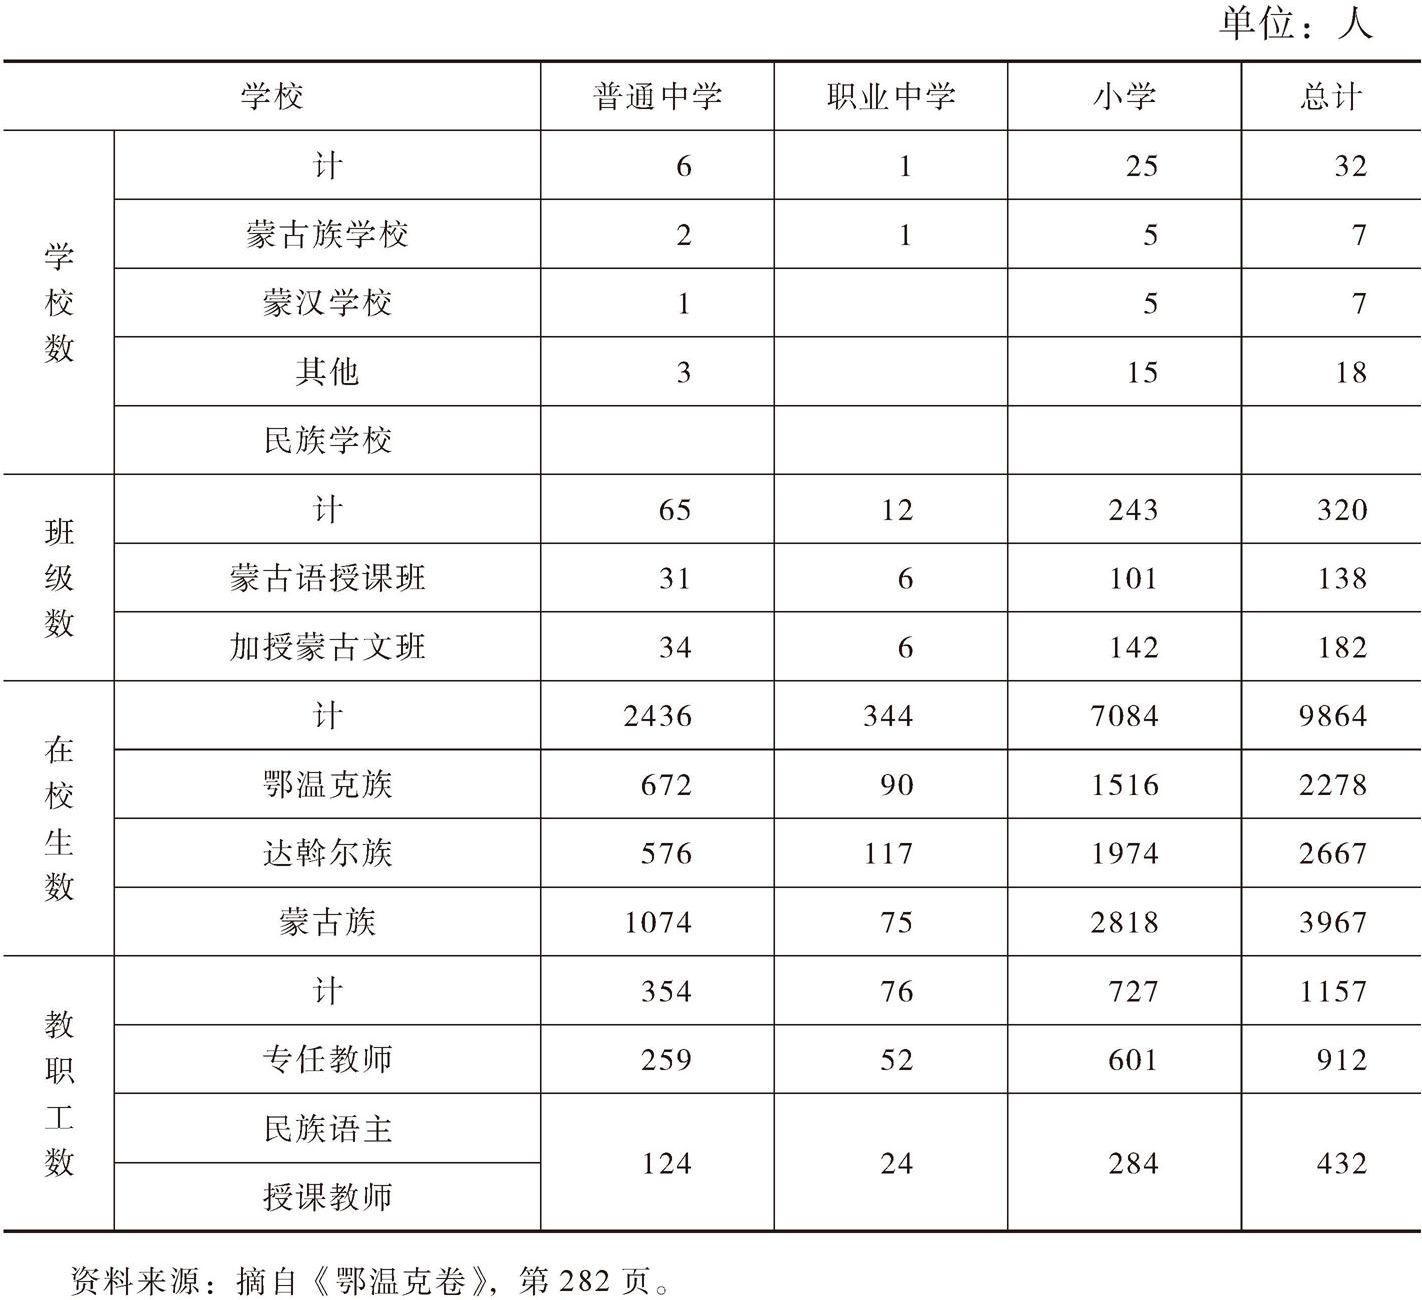 表1 根据民族教育情况统计的鄂温克旗学校数、在校学生人数和教职工人数